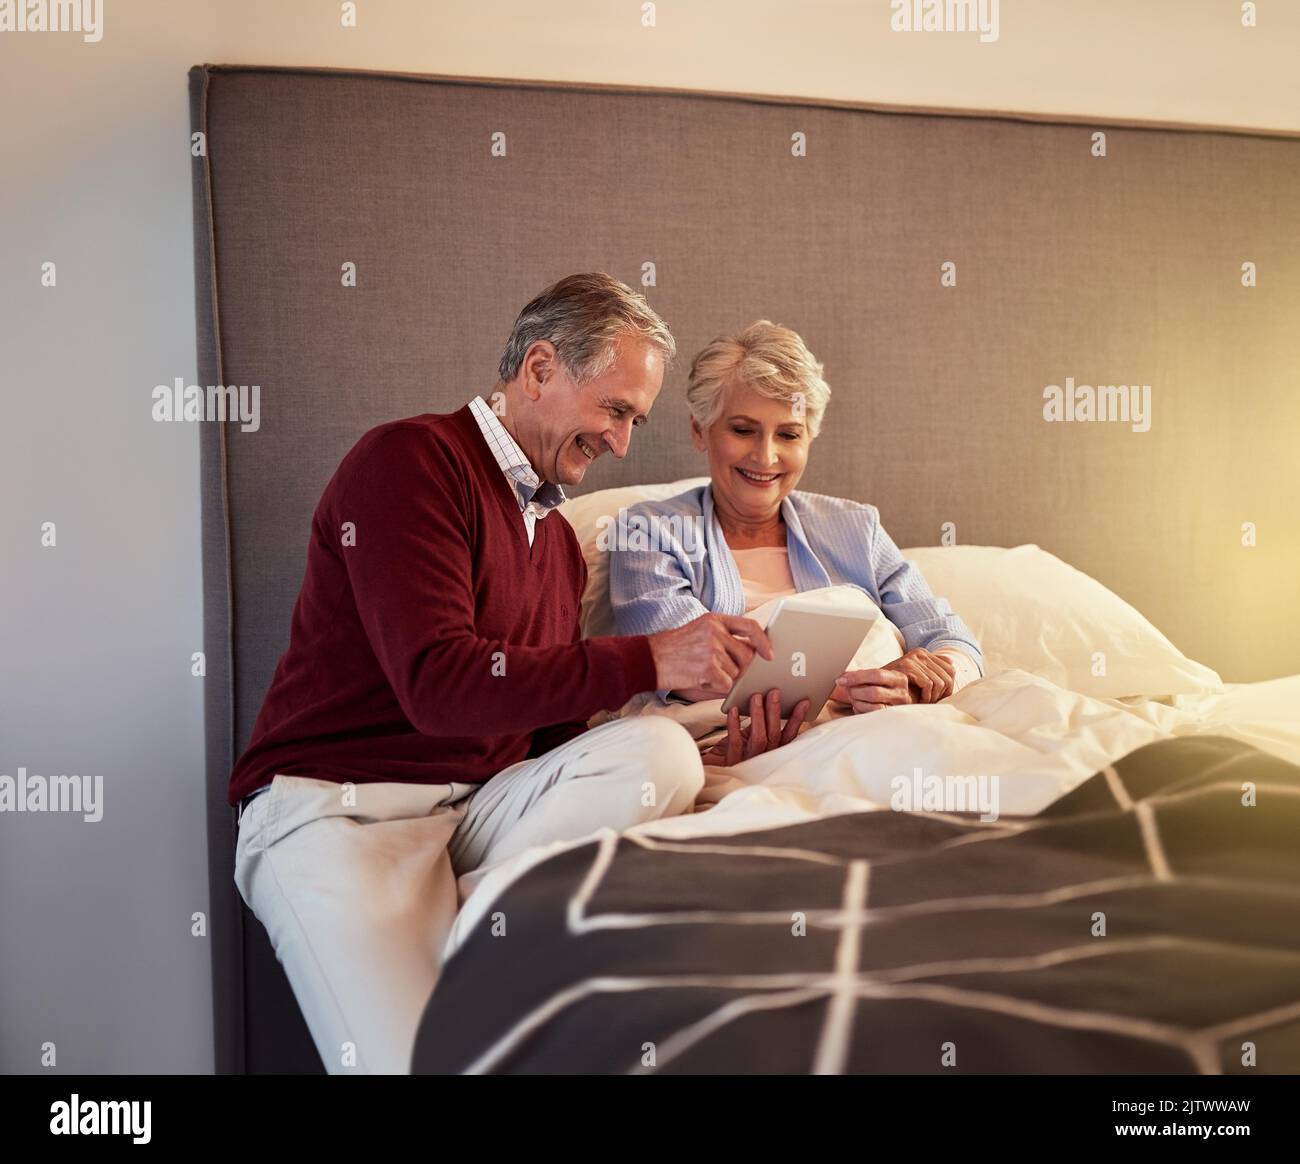 La technologie nous simplifie la vie. Un couple senior regarde une tablette ensemble tout en étant assis au lit. Banque D'Images